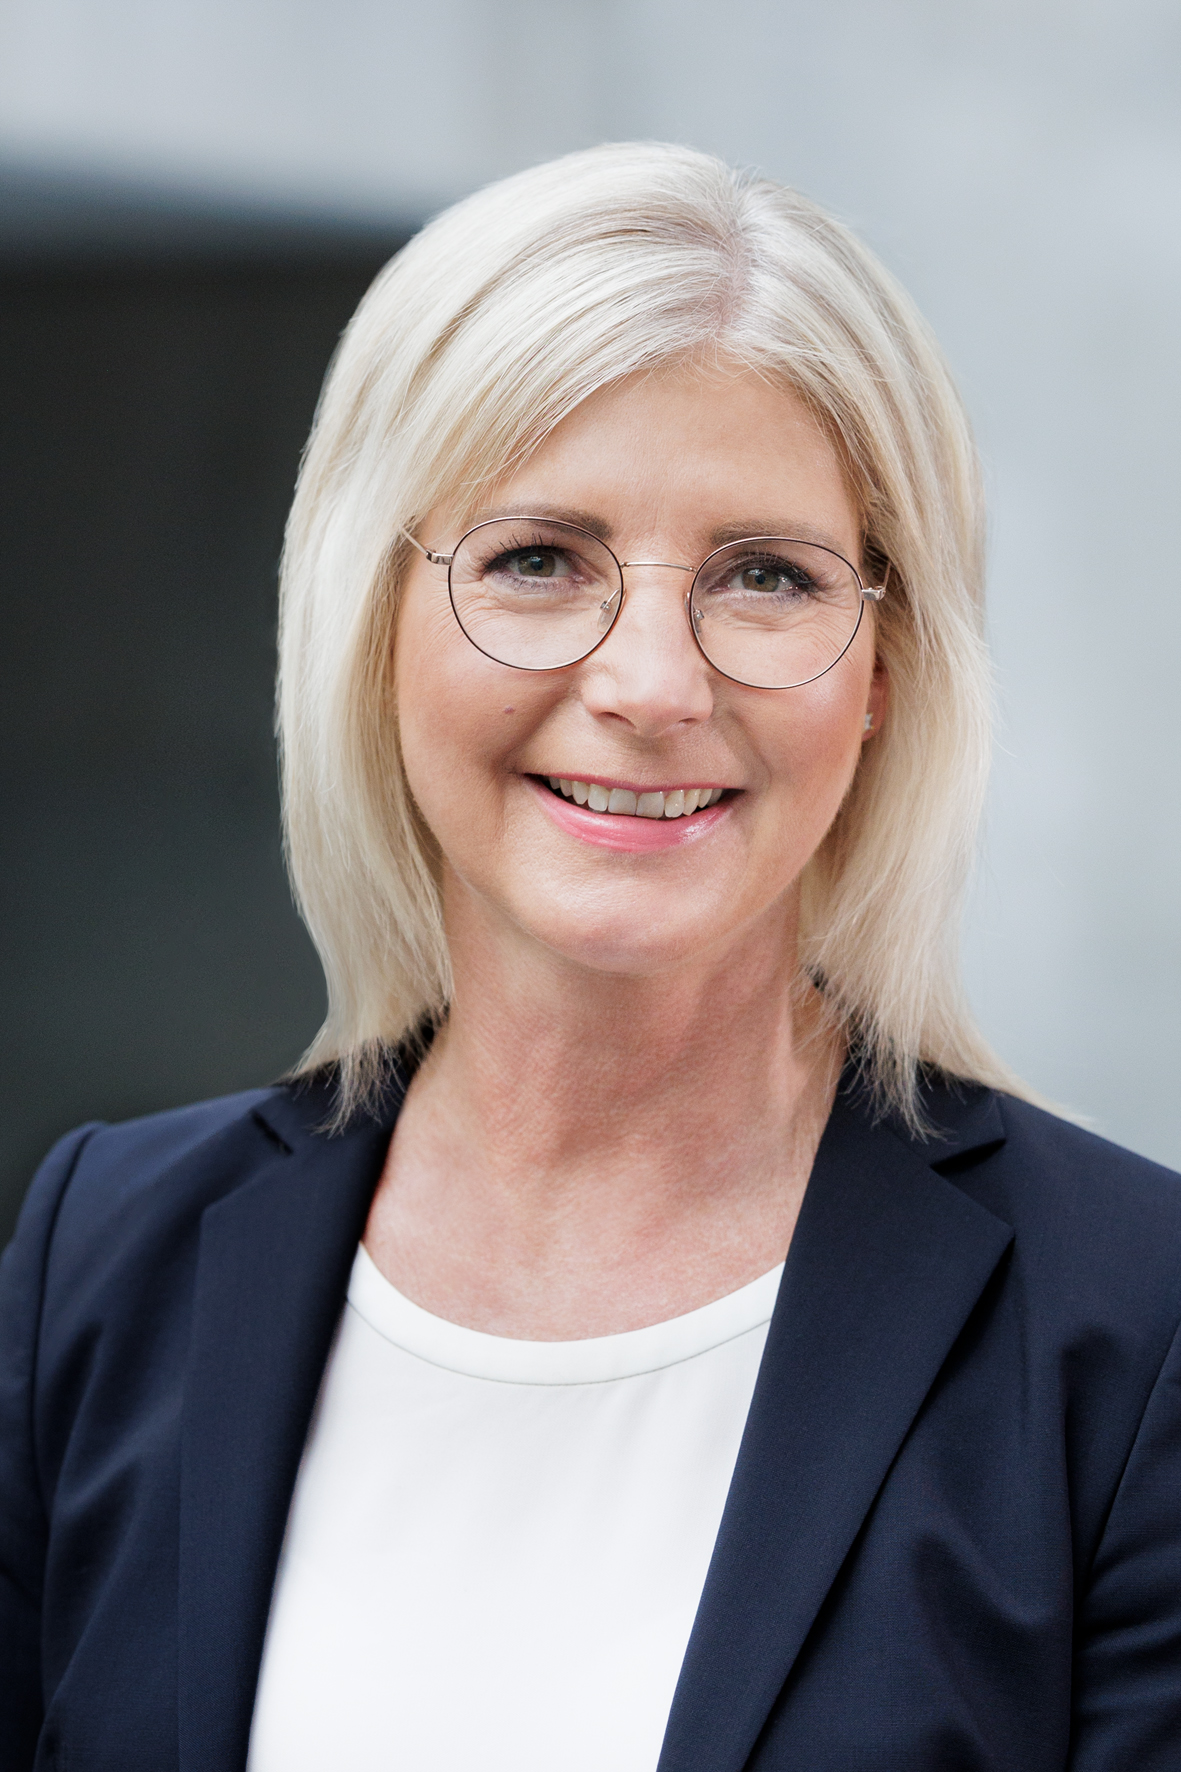 Vergrößerungsansichten für Bild: Portraitbild von Frau Staatsministerin Ulrike Scharf, Mitglied des Bayerischen Landtags  